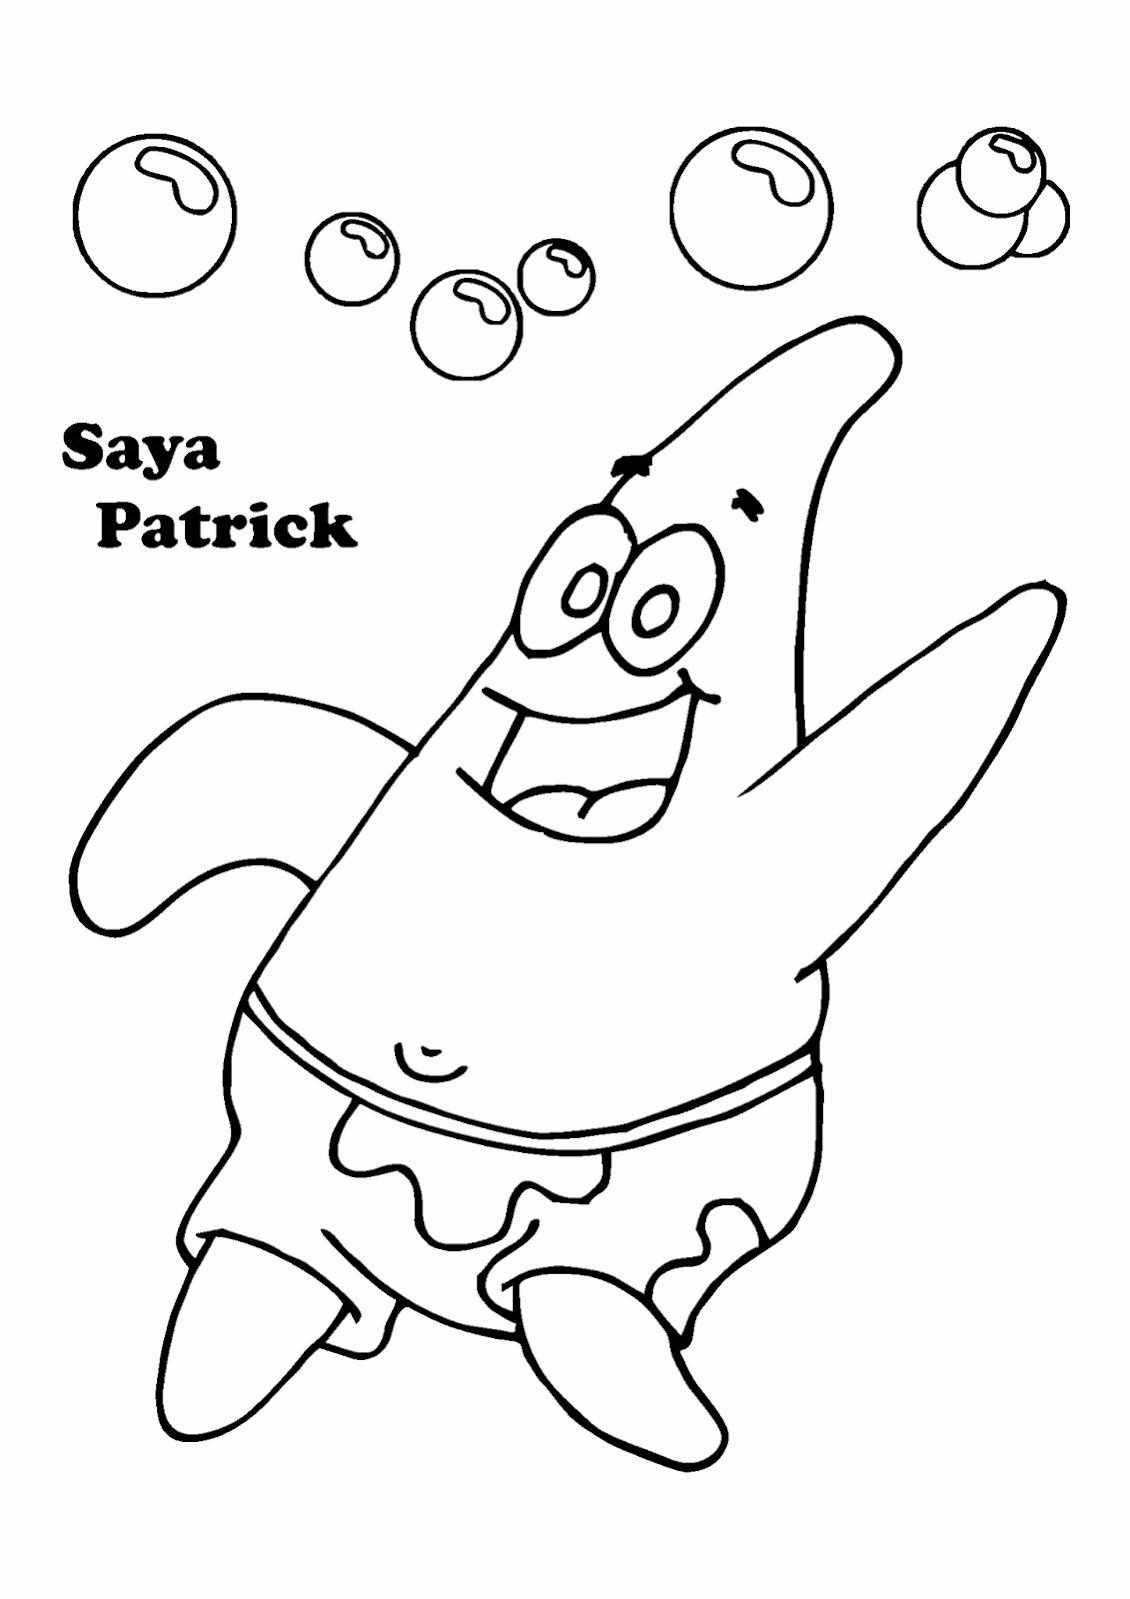 Gambar Mewarnai Tokoh Kartun SpongeBob SquarePants Contoh Anak PAUD